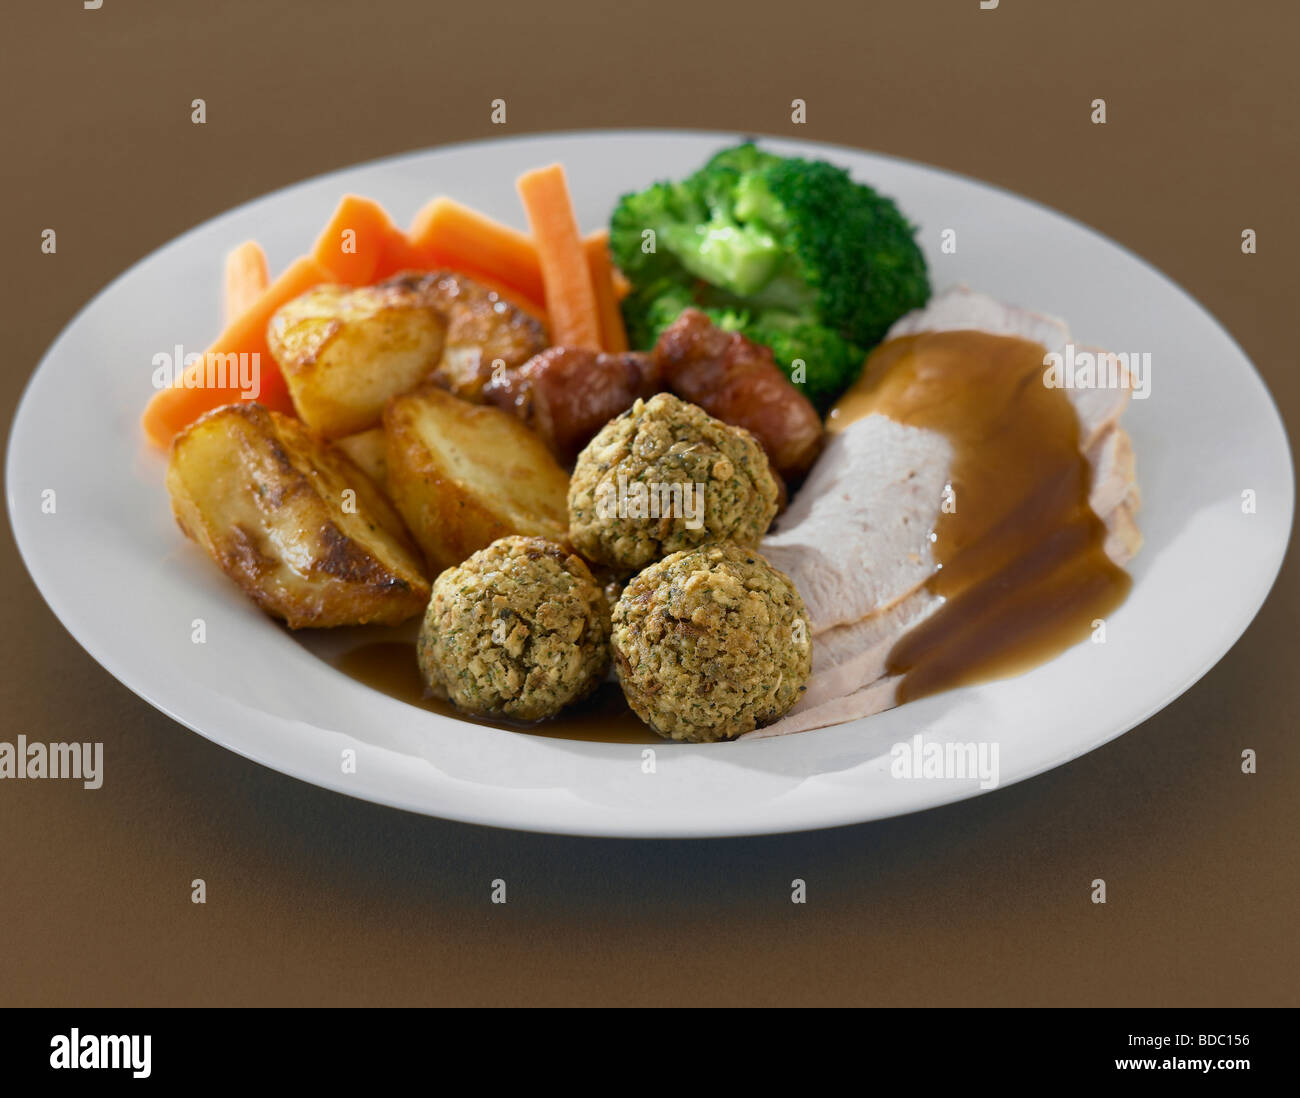 turkey roast dinner Stock Photo